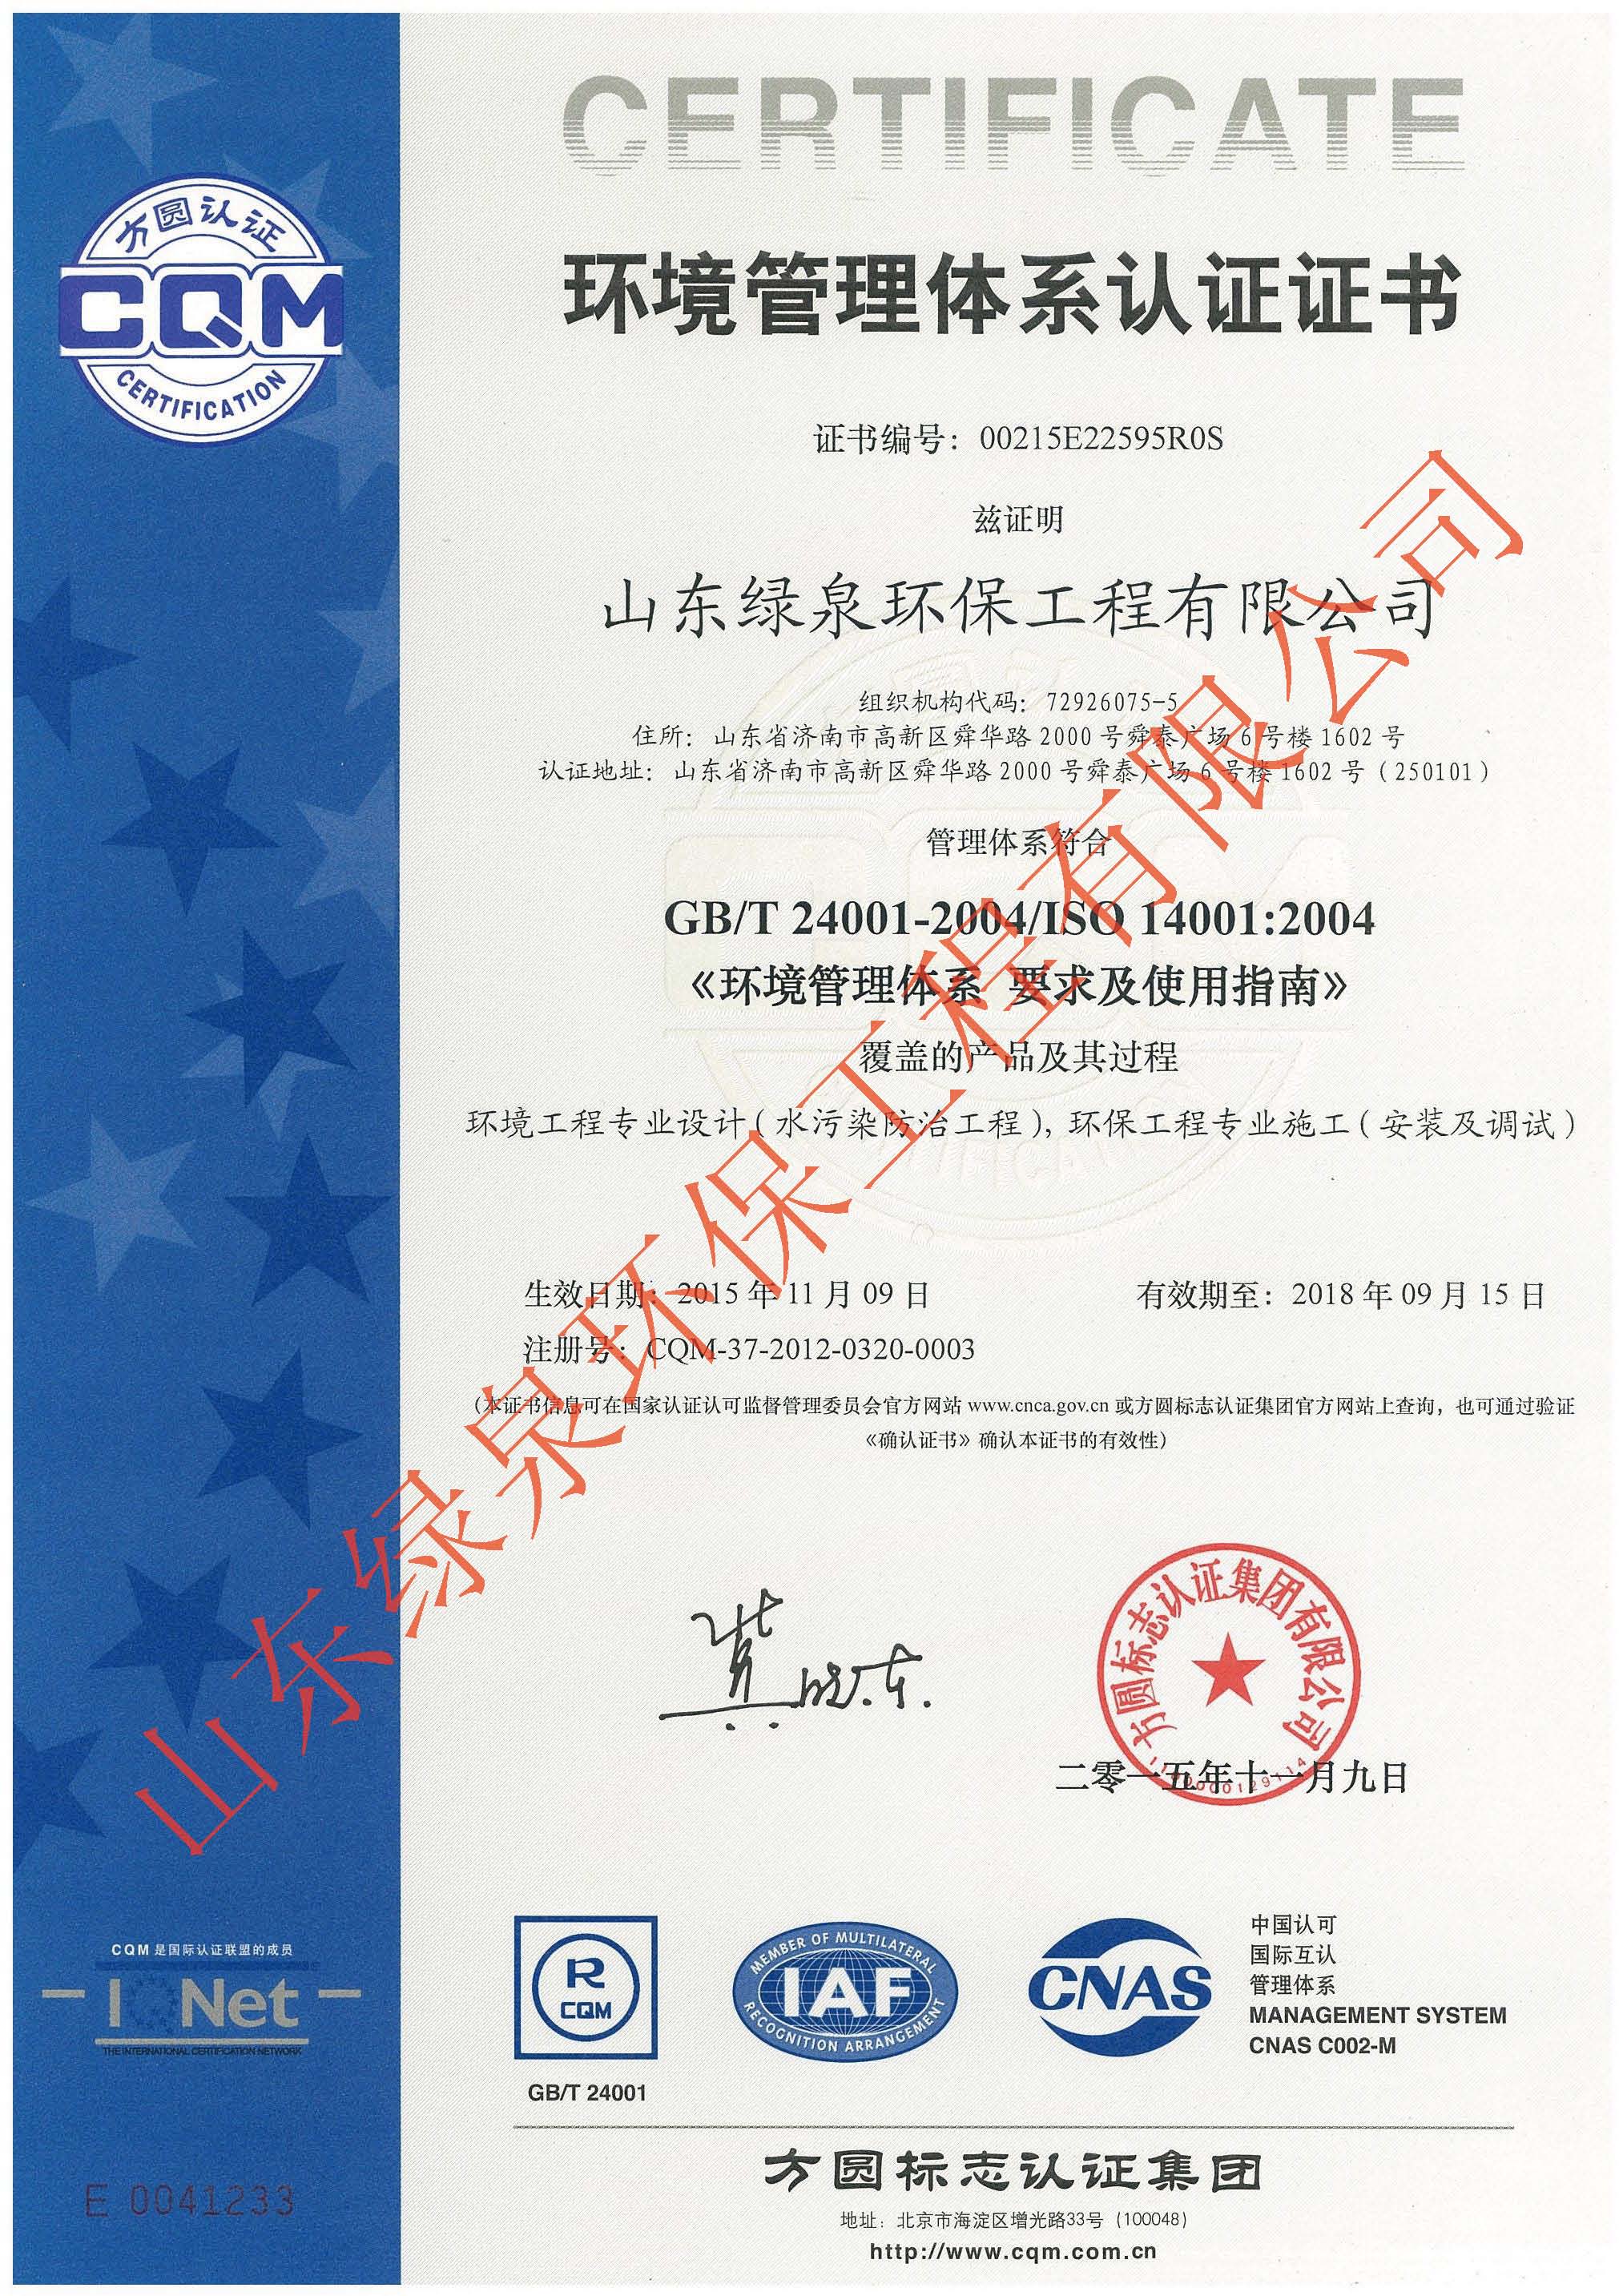 热烈庆祝我司顺利通过ISO14001和OHSAS18001认证